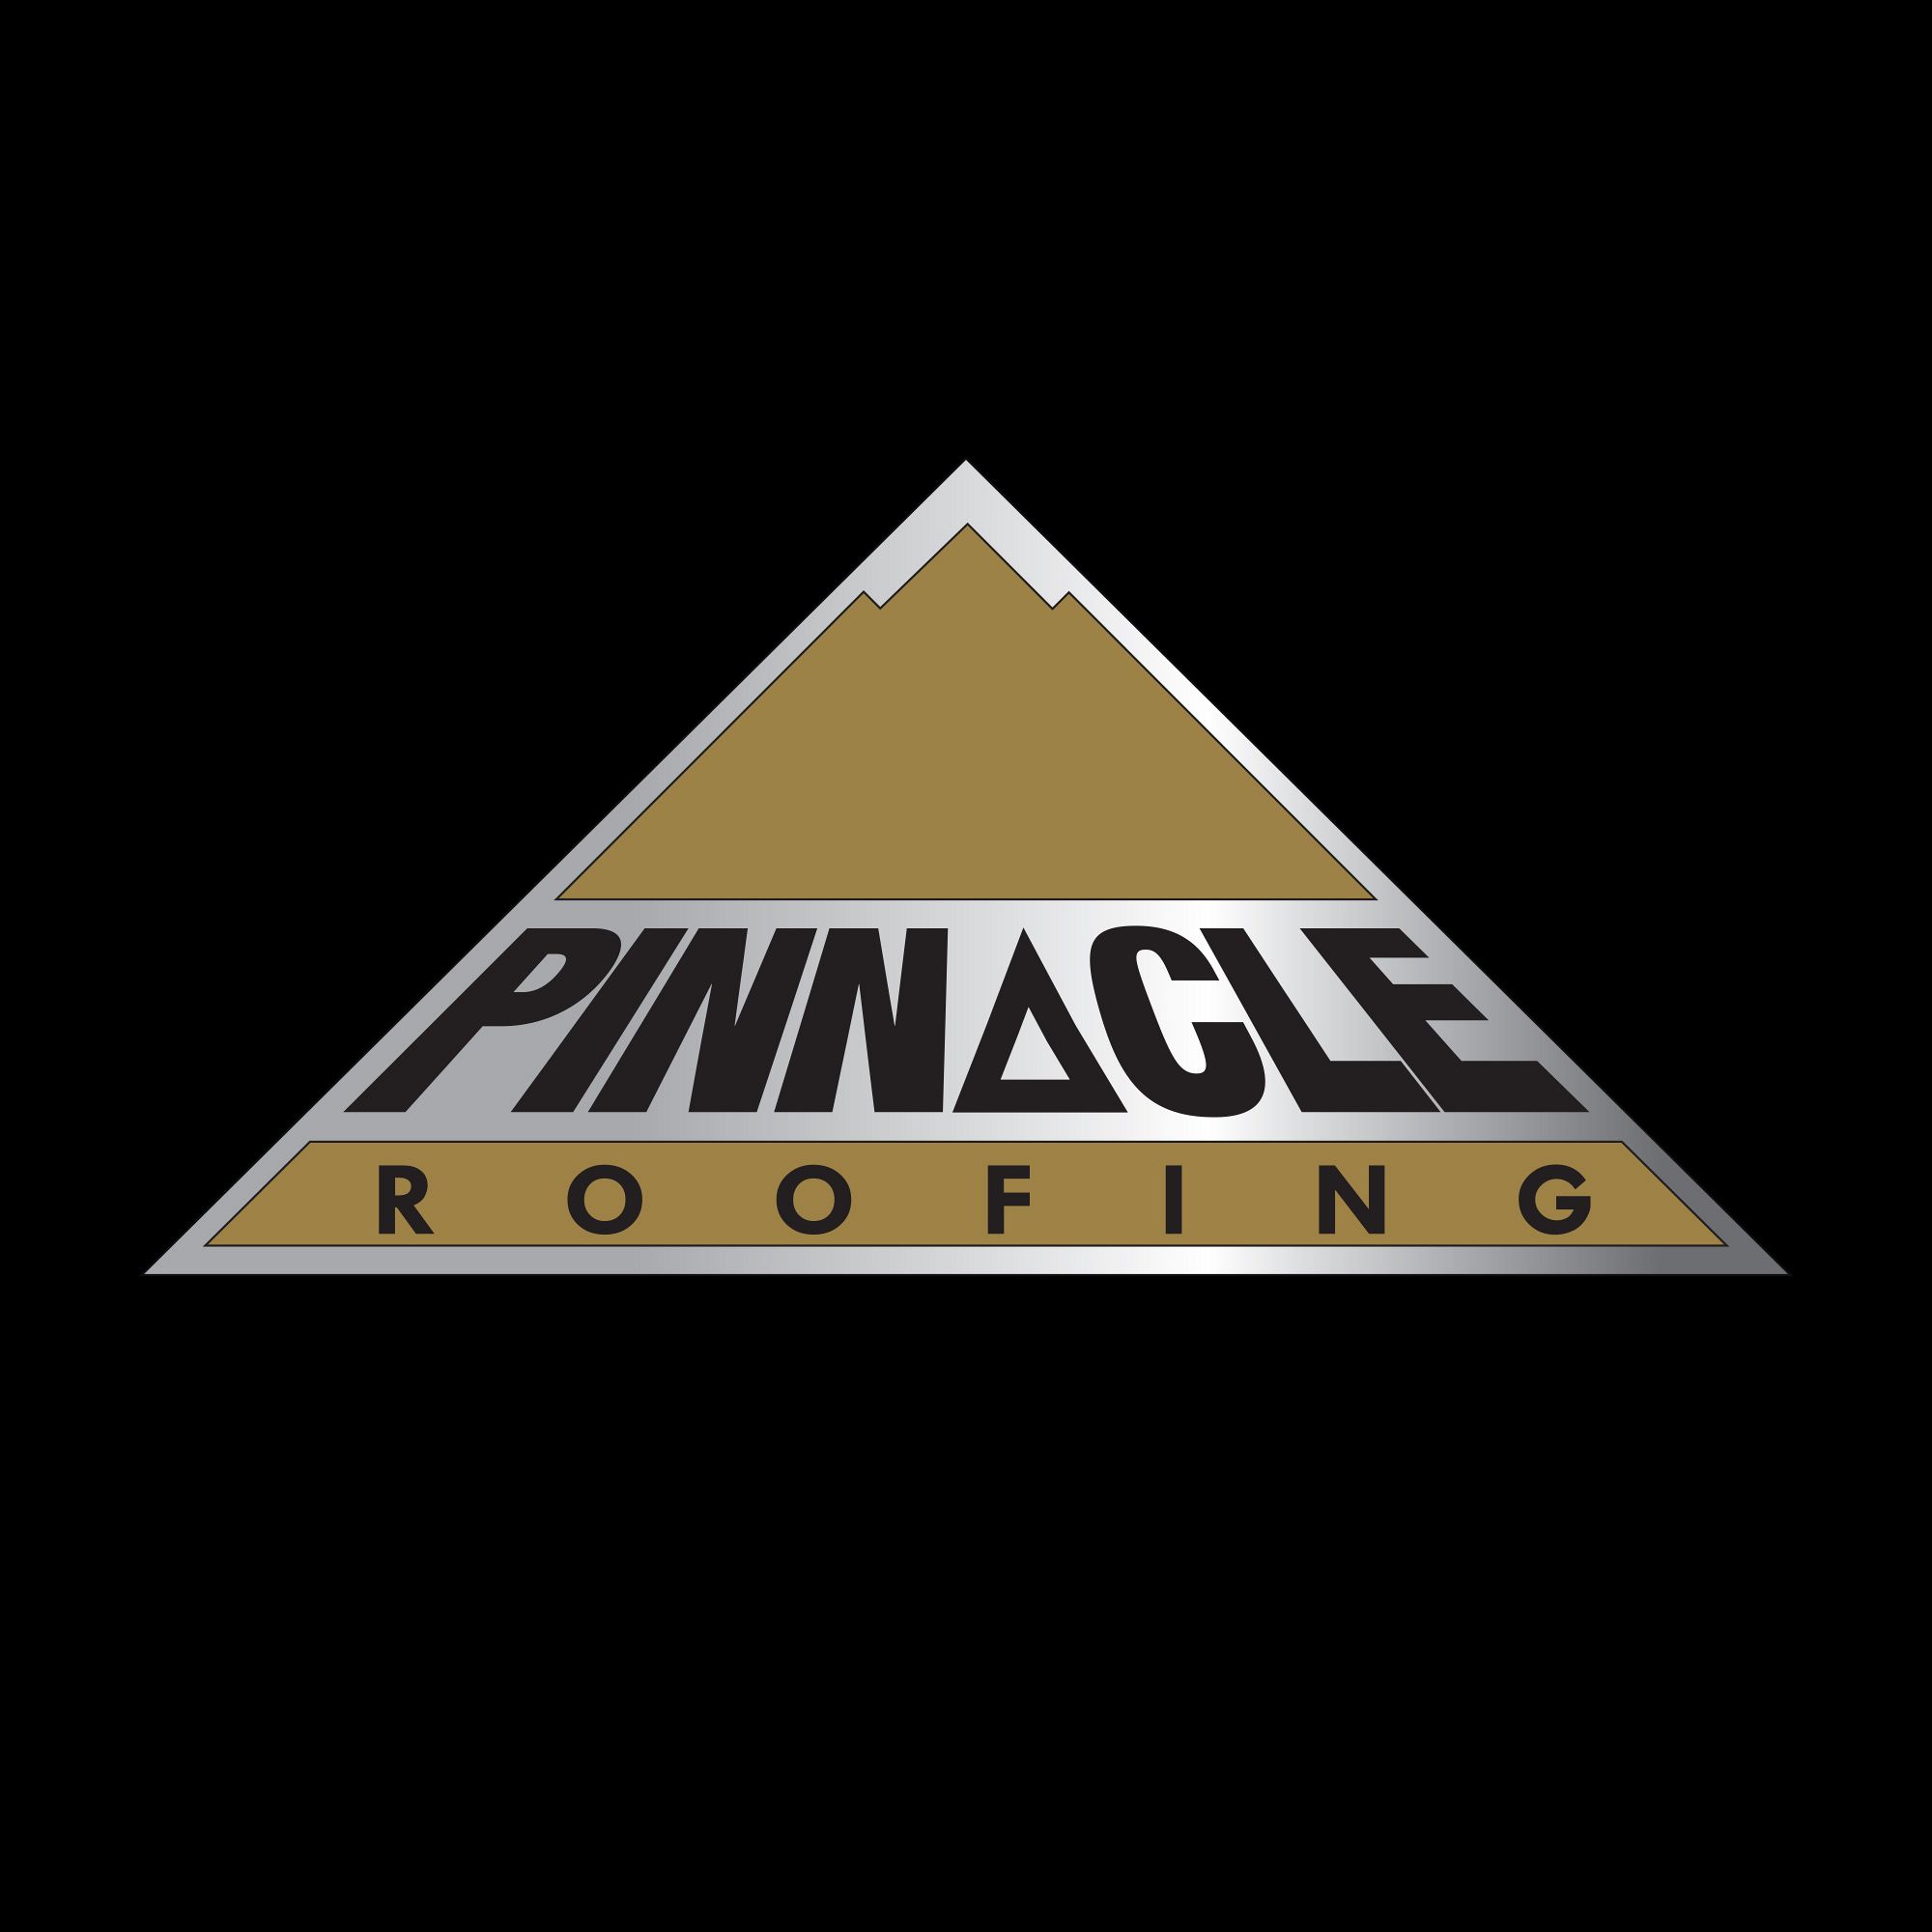 Pinnacle Roofing Ltd